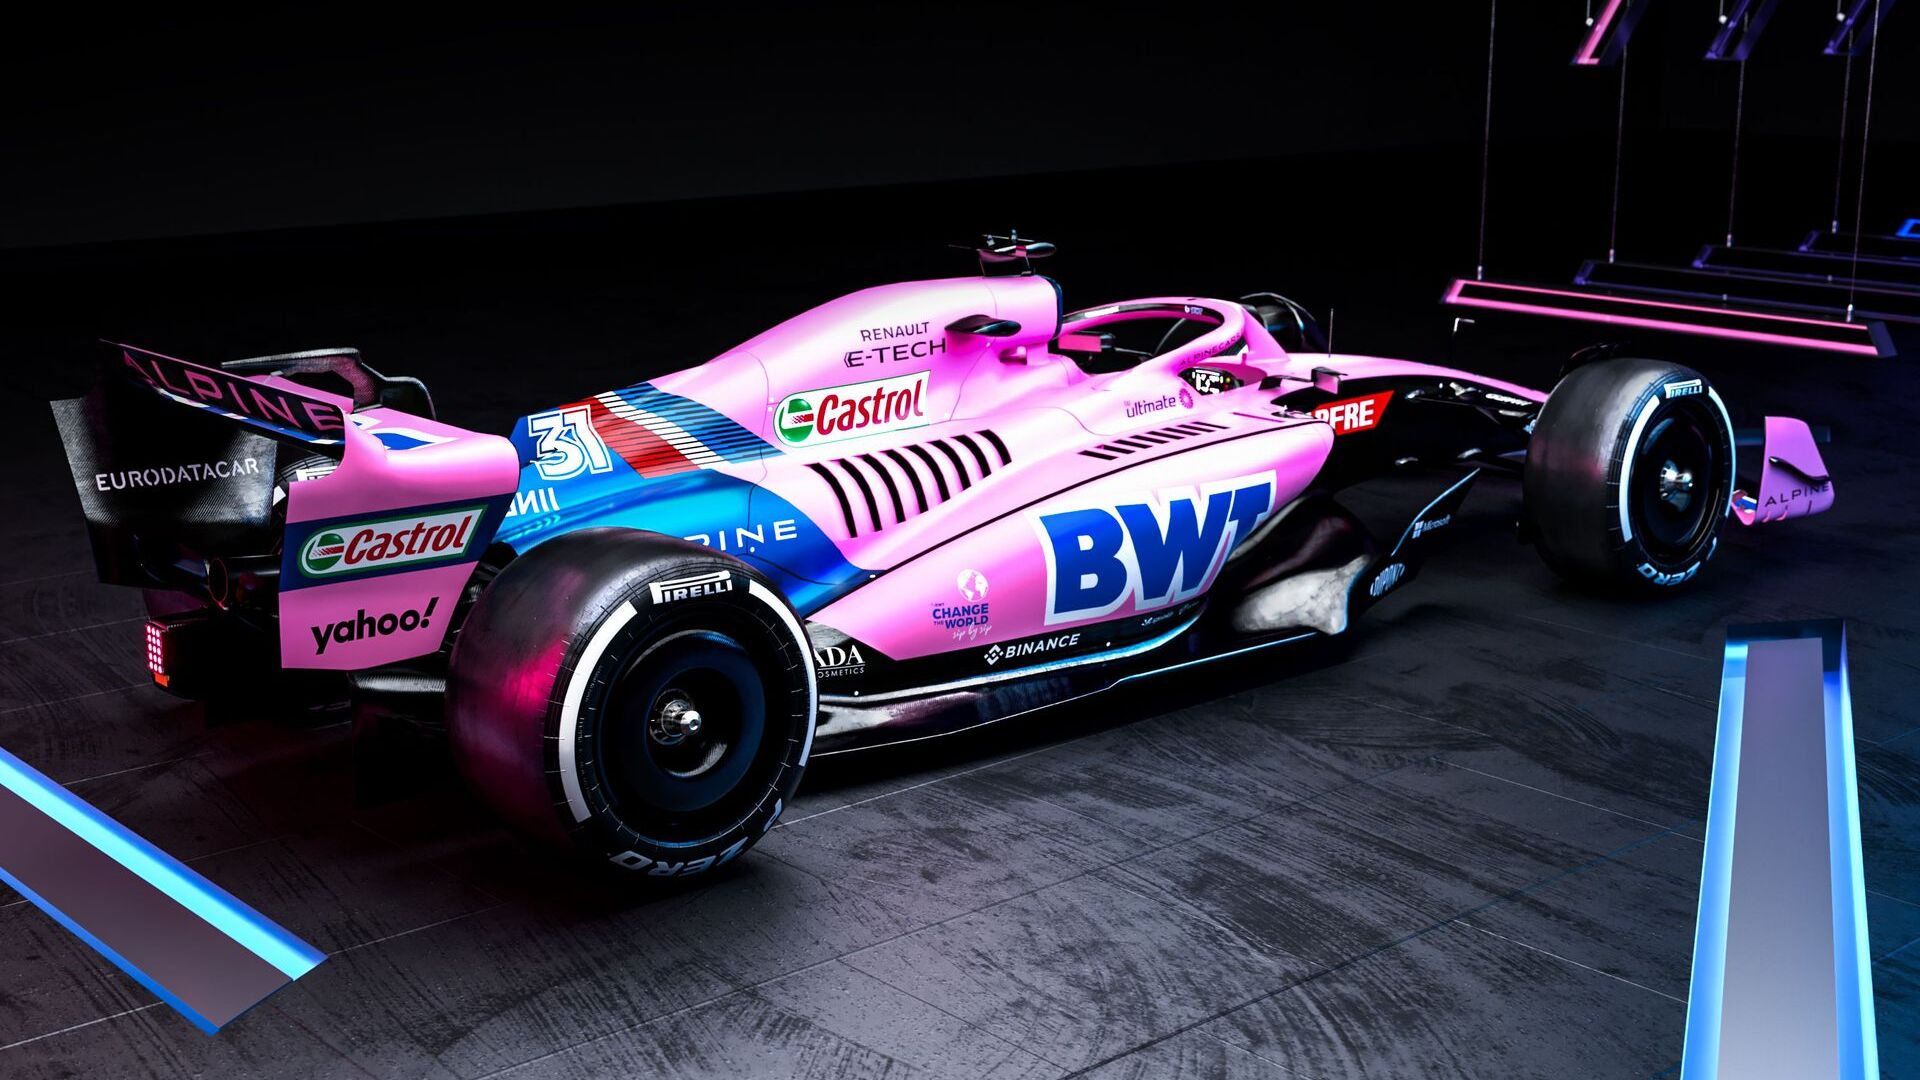 La voiture du BWT Alpine F1 Team débutera la saison 2022 de Formule 1 dans une livrée rose